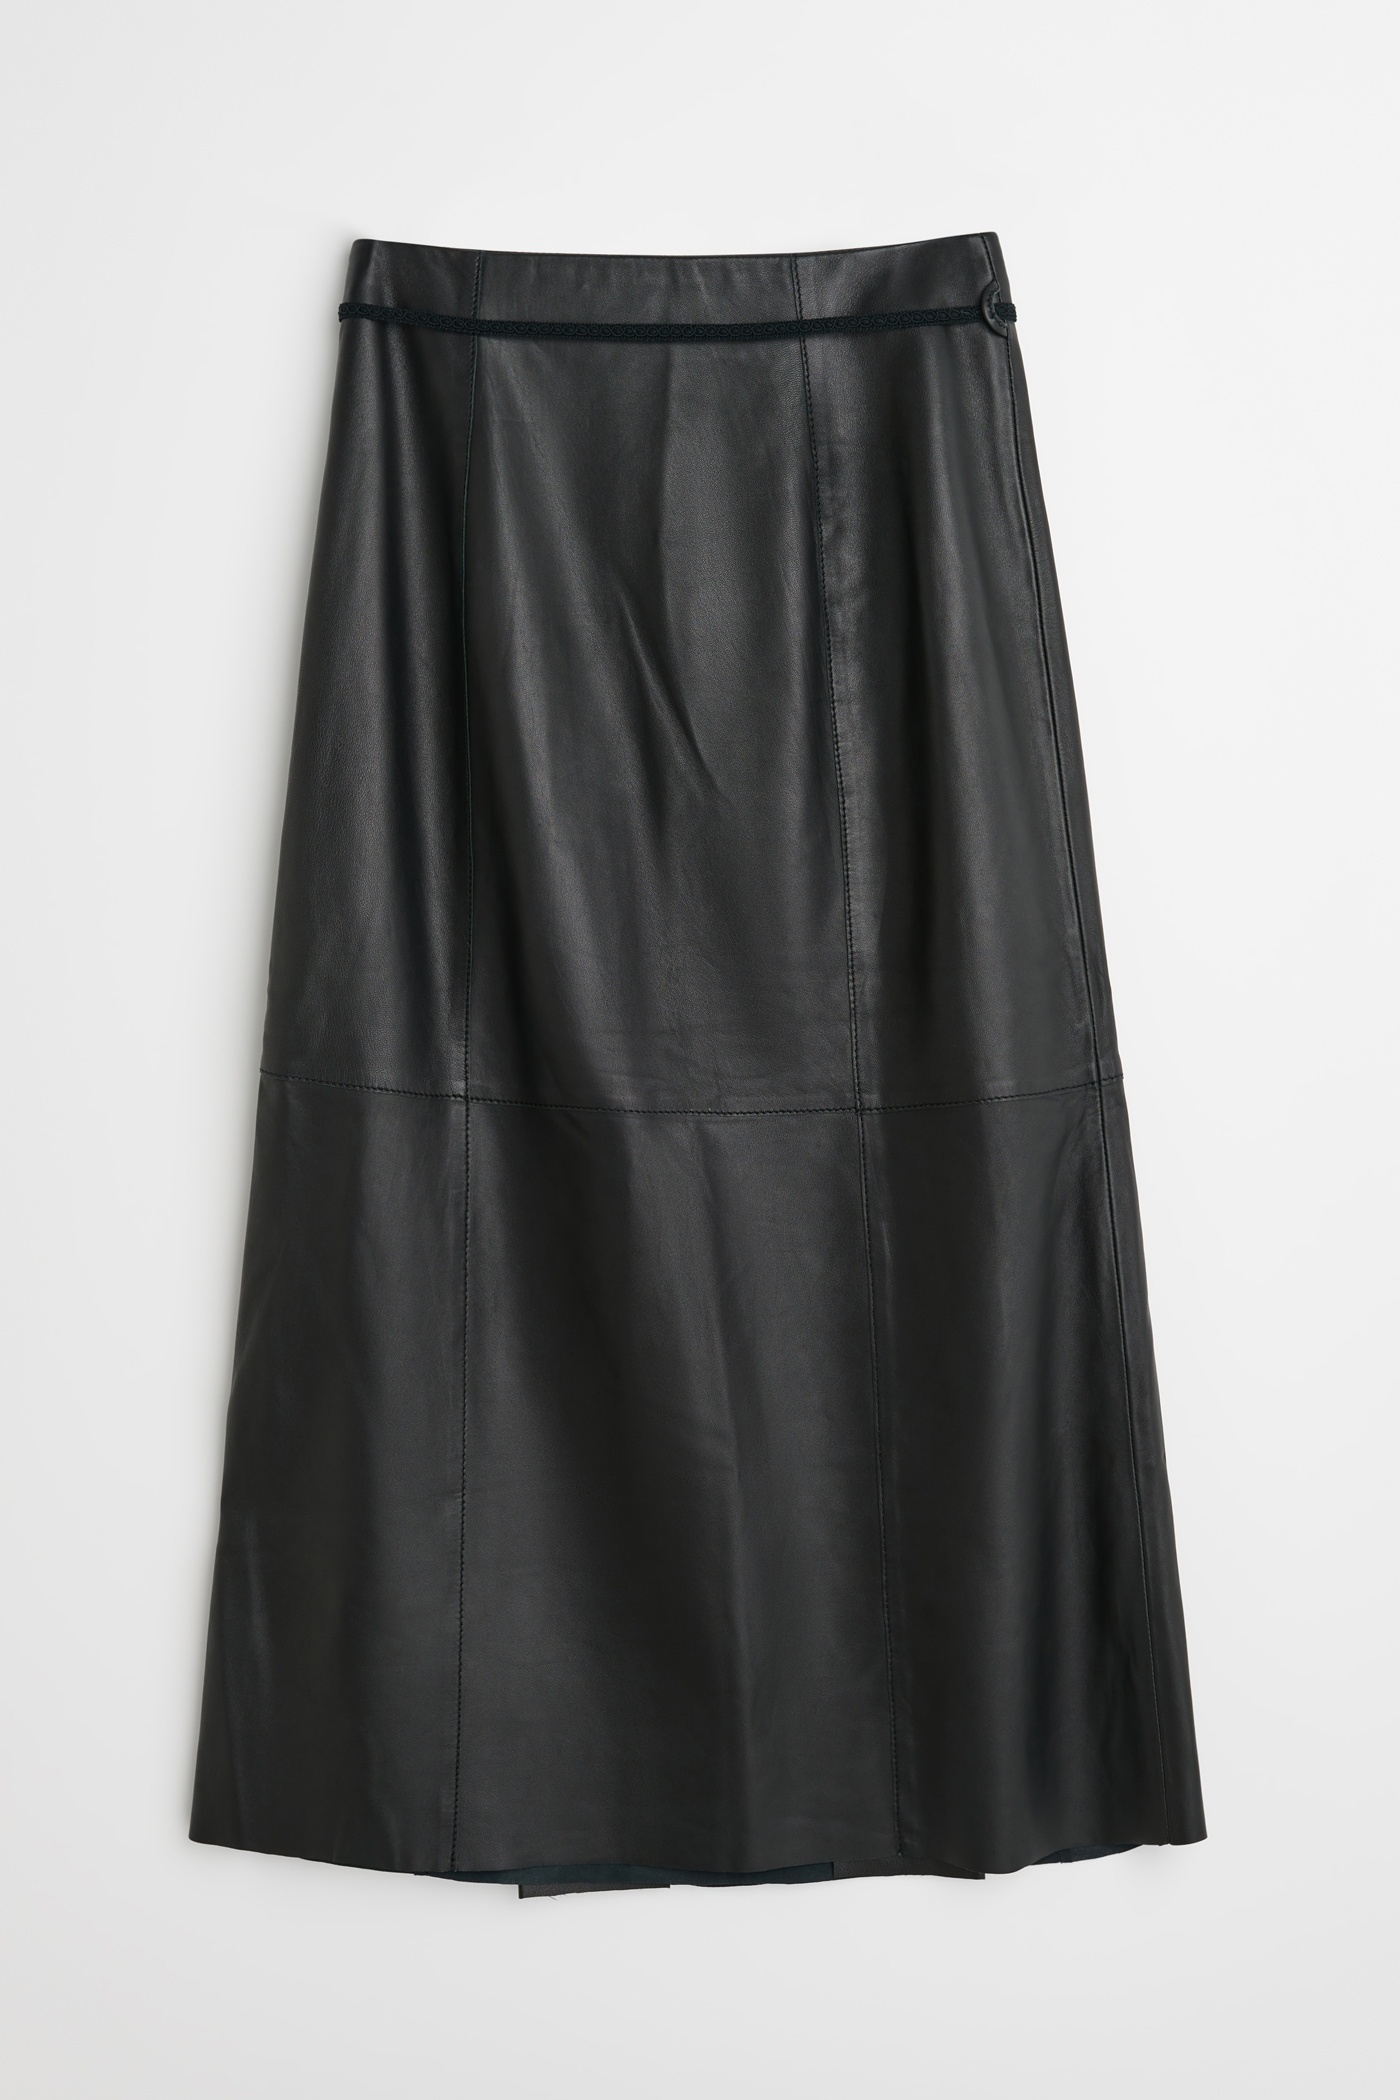 Leather Sarong Black - 6